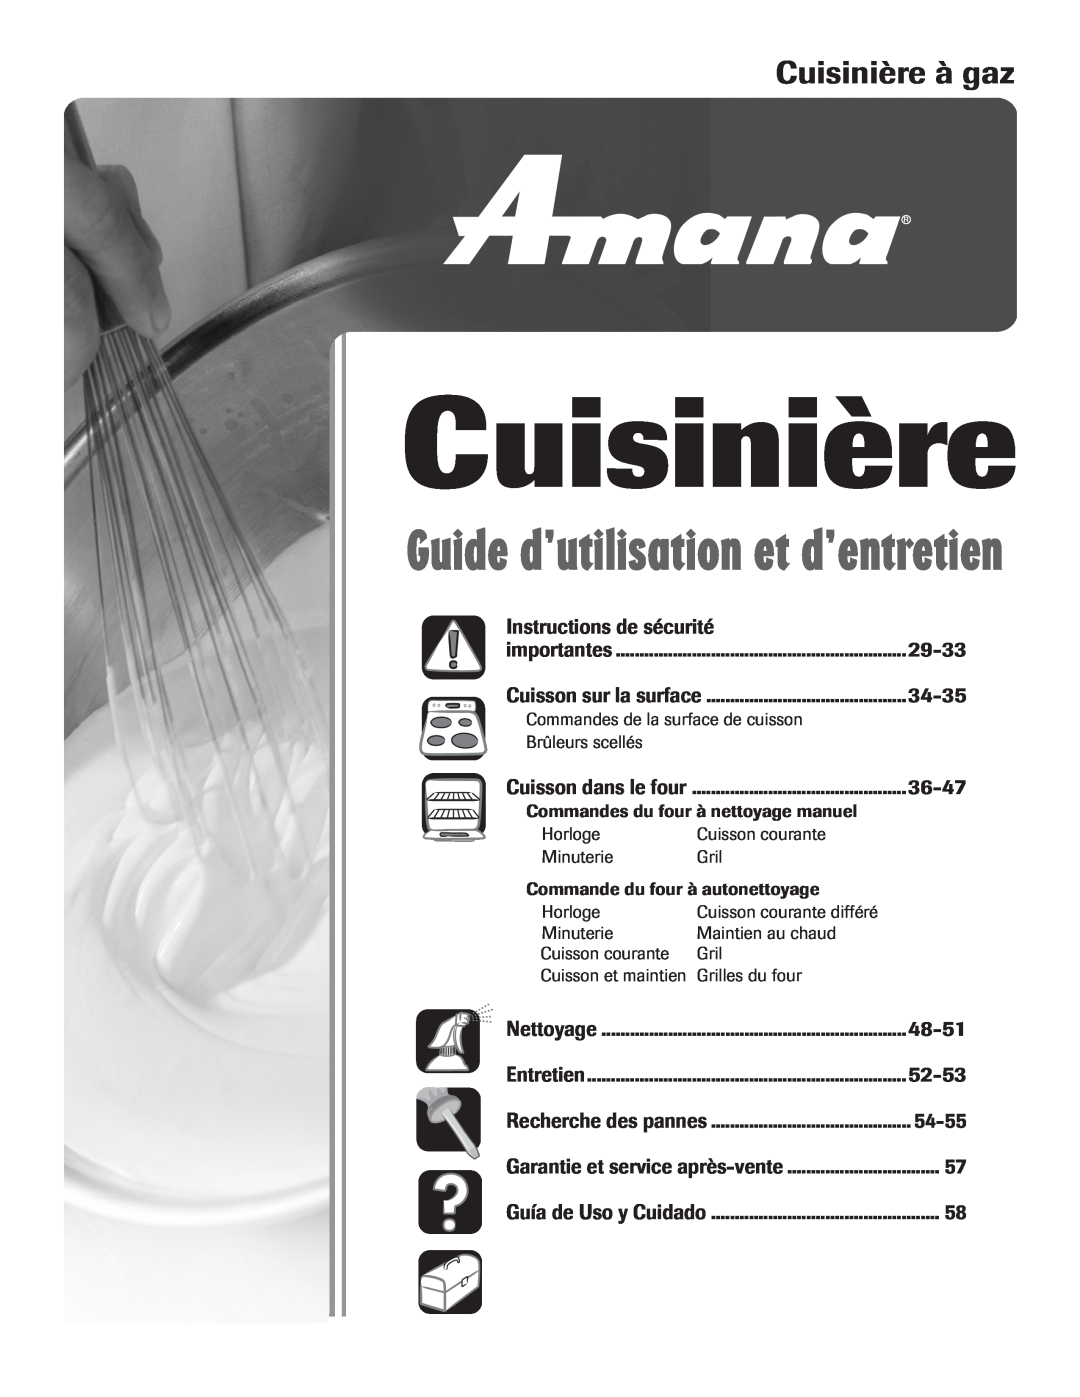 Amana 8113P515-60 manual Cuisinière à gaz, Instructions de sécurité, 29-33, 34-35, 36-47, 48-51, 52-53, 54-55 